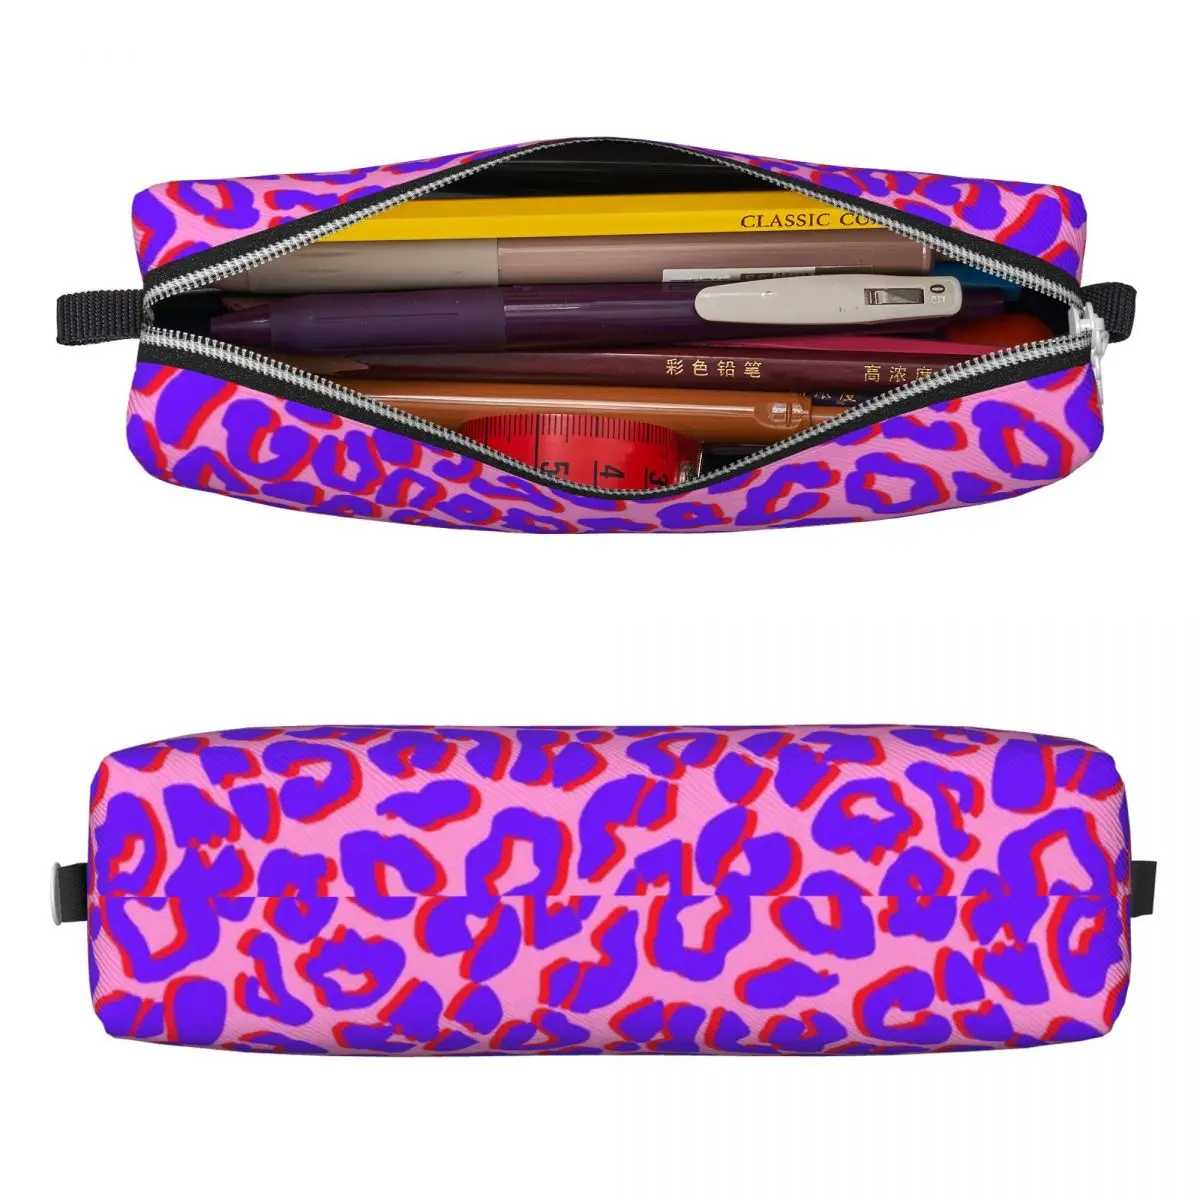 Фиолетовый пенал с леопардовым принтом, пеналы, ручка для студентов, сумка большой емкости, школьный подарок, канцелярские принадлежности